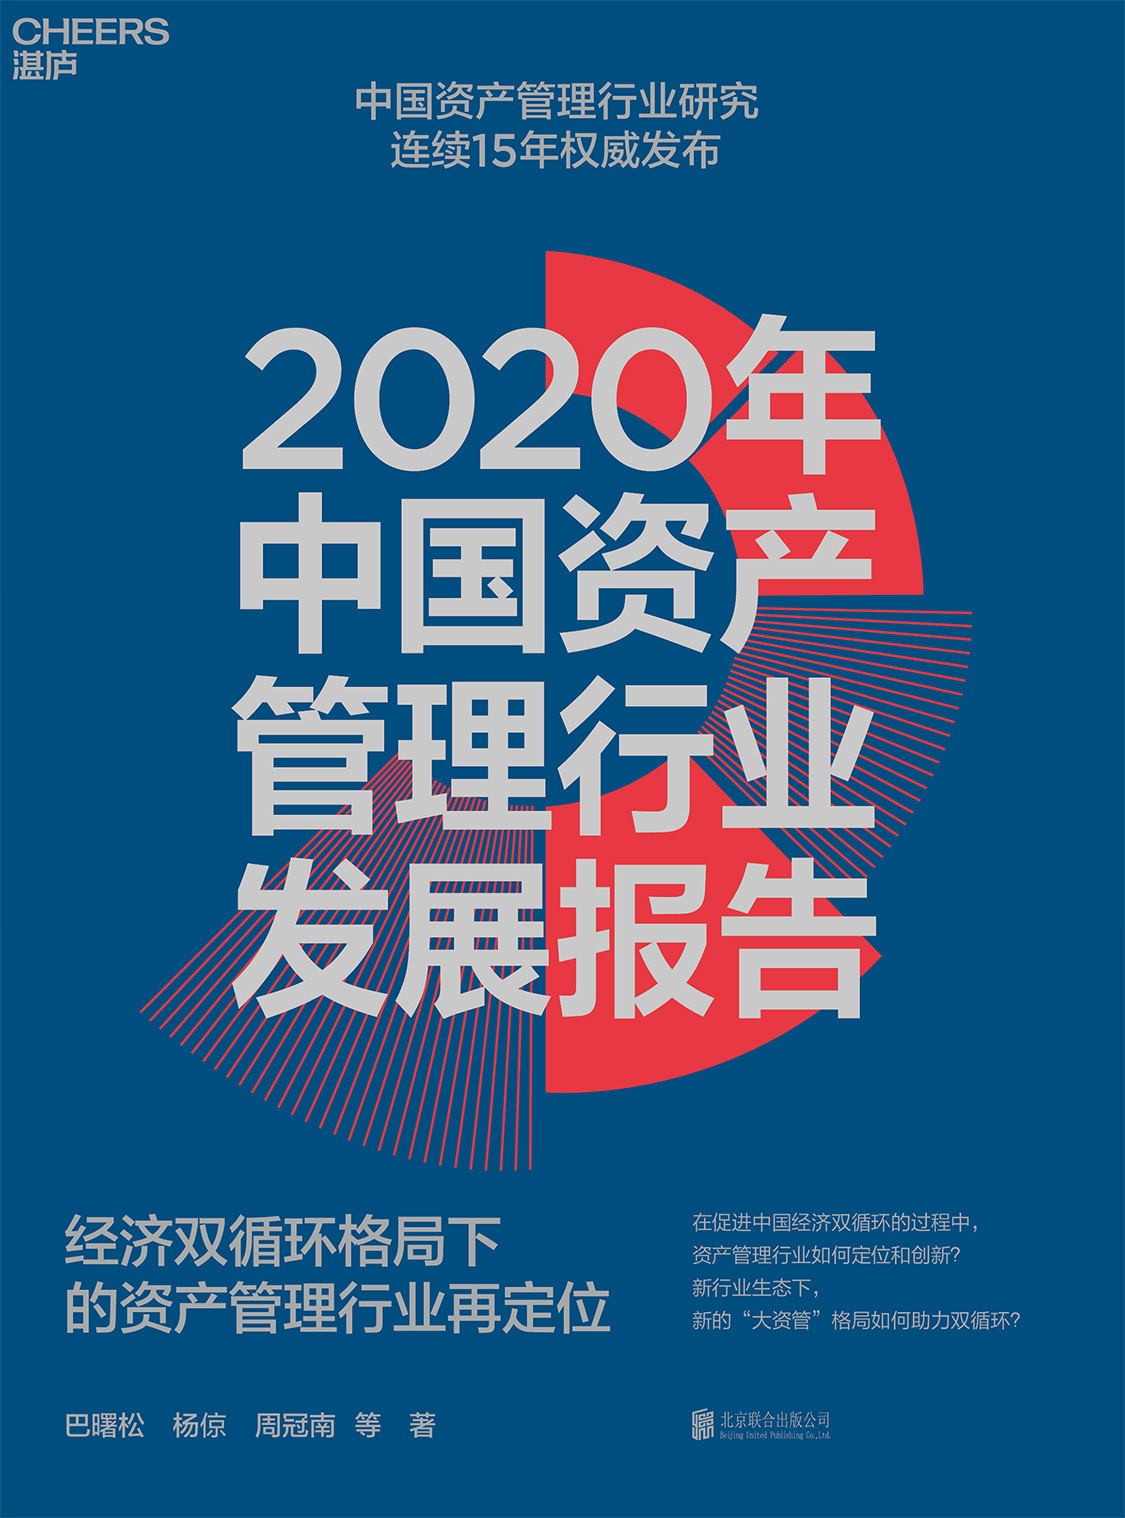 湛庐APP - 对话最伟大的头脑，与最聪明的人共同进化 精品推荐 2020年中国资产管理行业发展报告